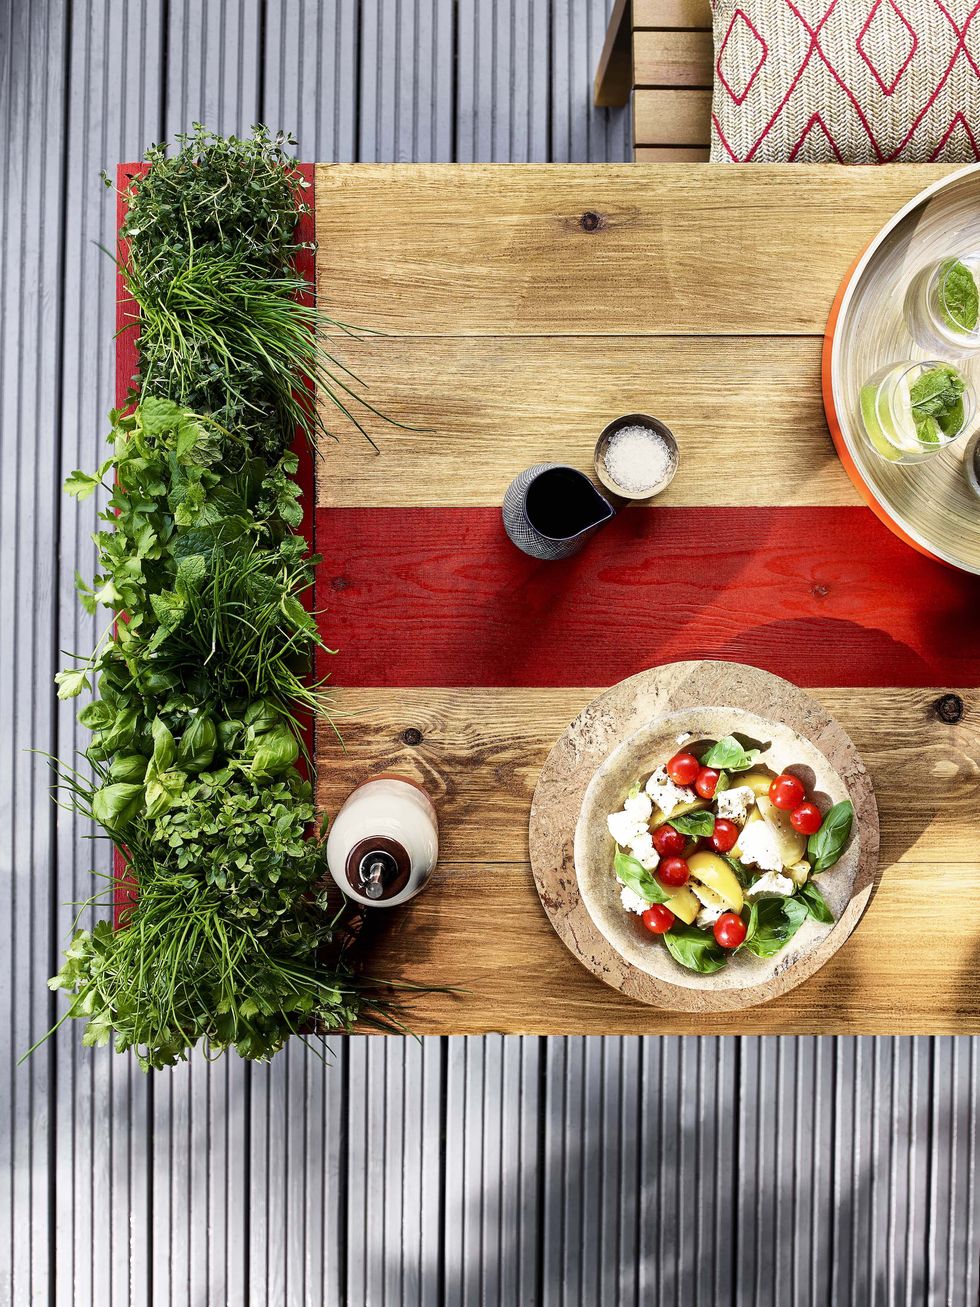 DIY garden ideas, living herb table